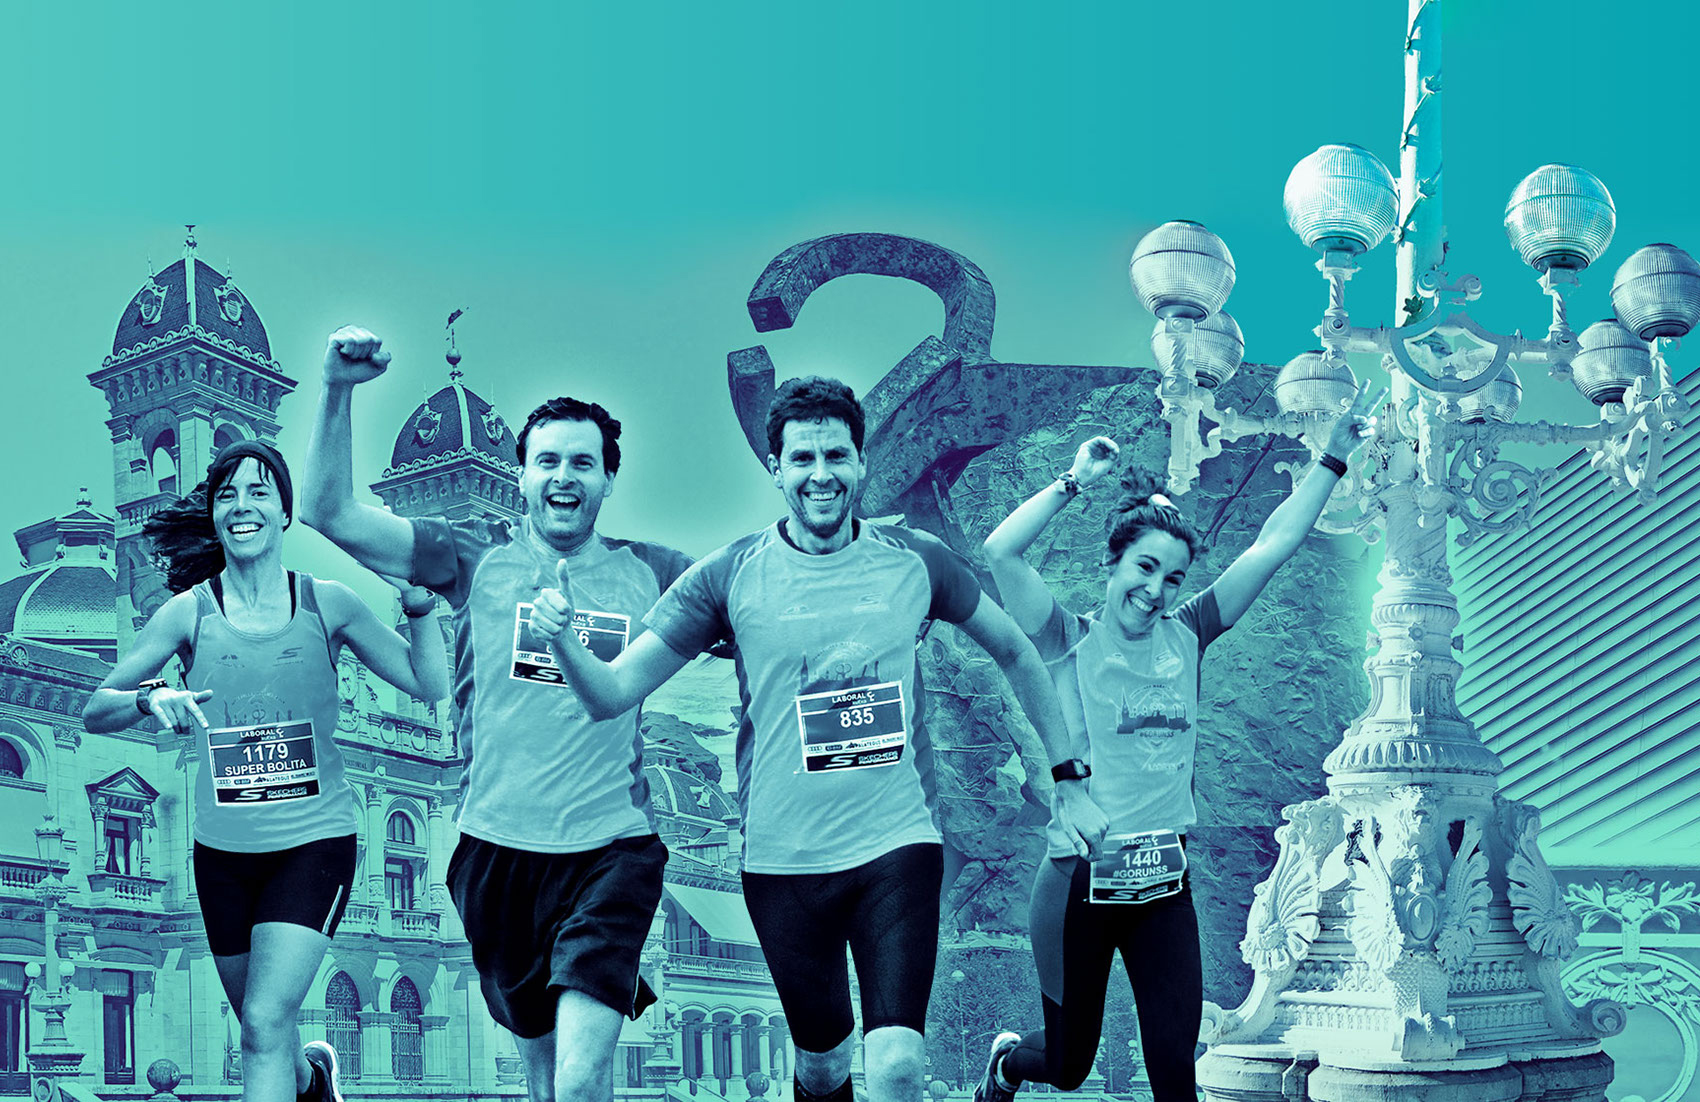 Sorteamos 3 dorsales para la Media Maratón de Donosti, ¡consigue la tuya para el 7 de abril!